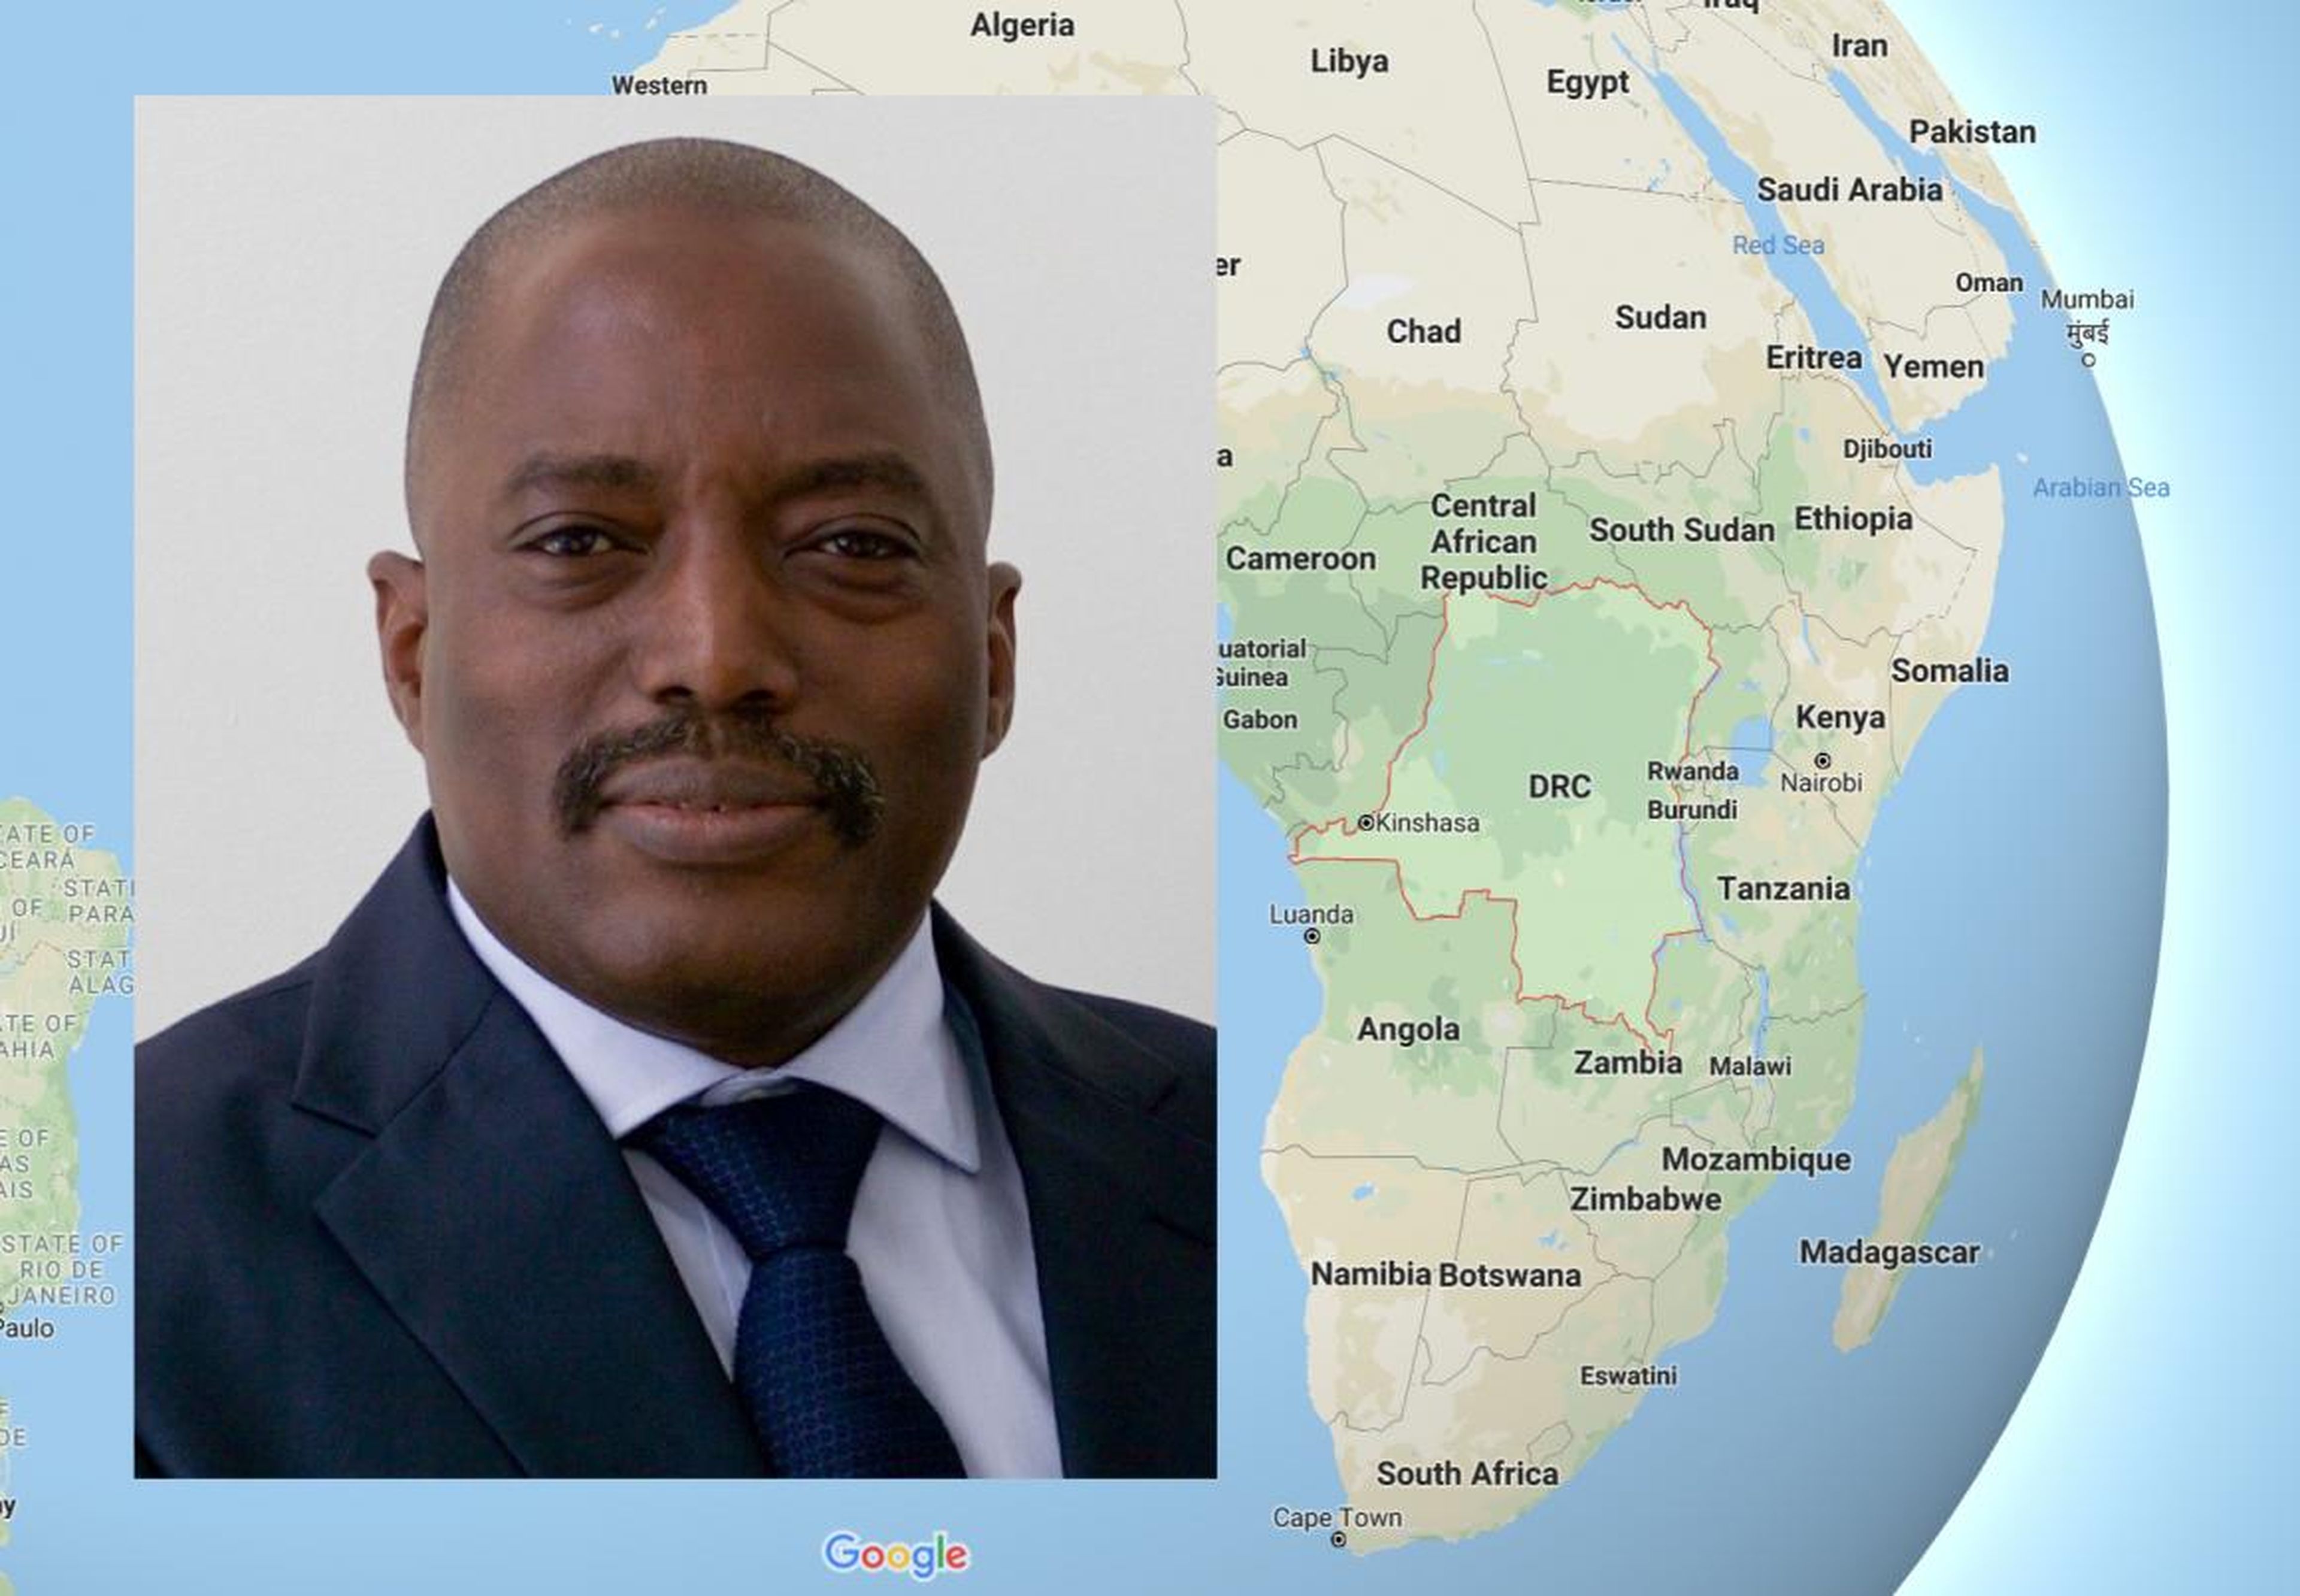 Un intento de transferir el poder del actual presidente Joseph Kabila a un nuevo líder provocó la caída de Internet en la República Democrática del Congo.